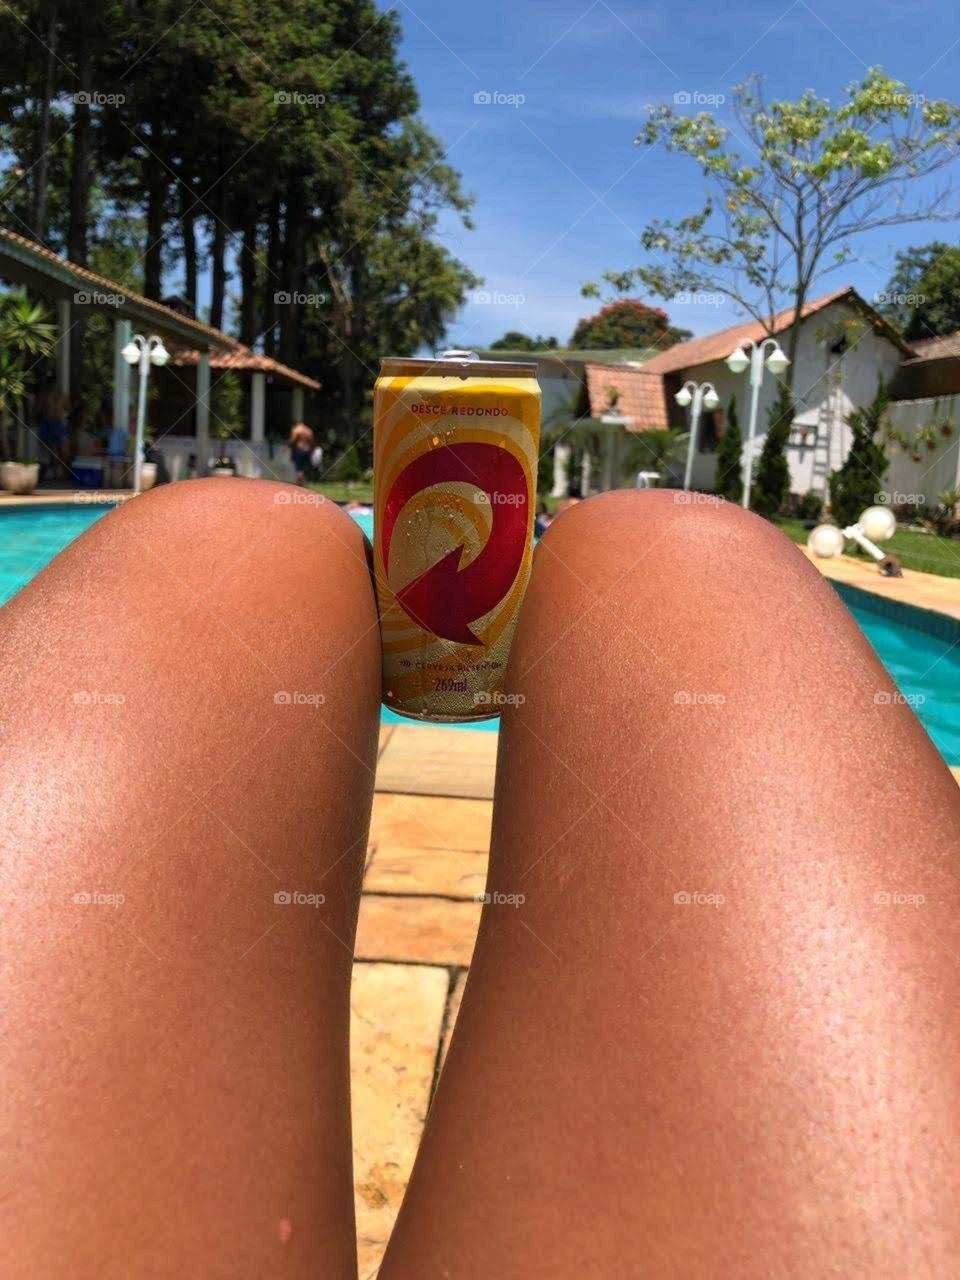 Combinação perfeita,Sol,piscina e cerveja